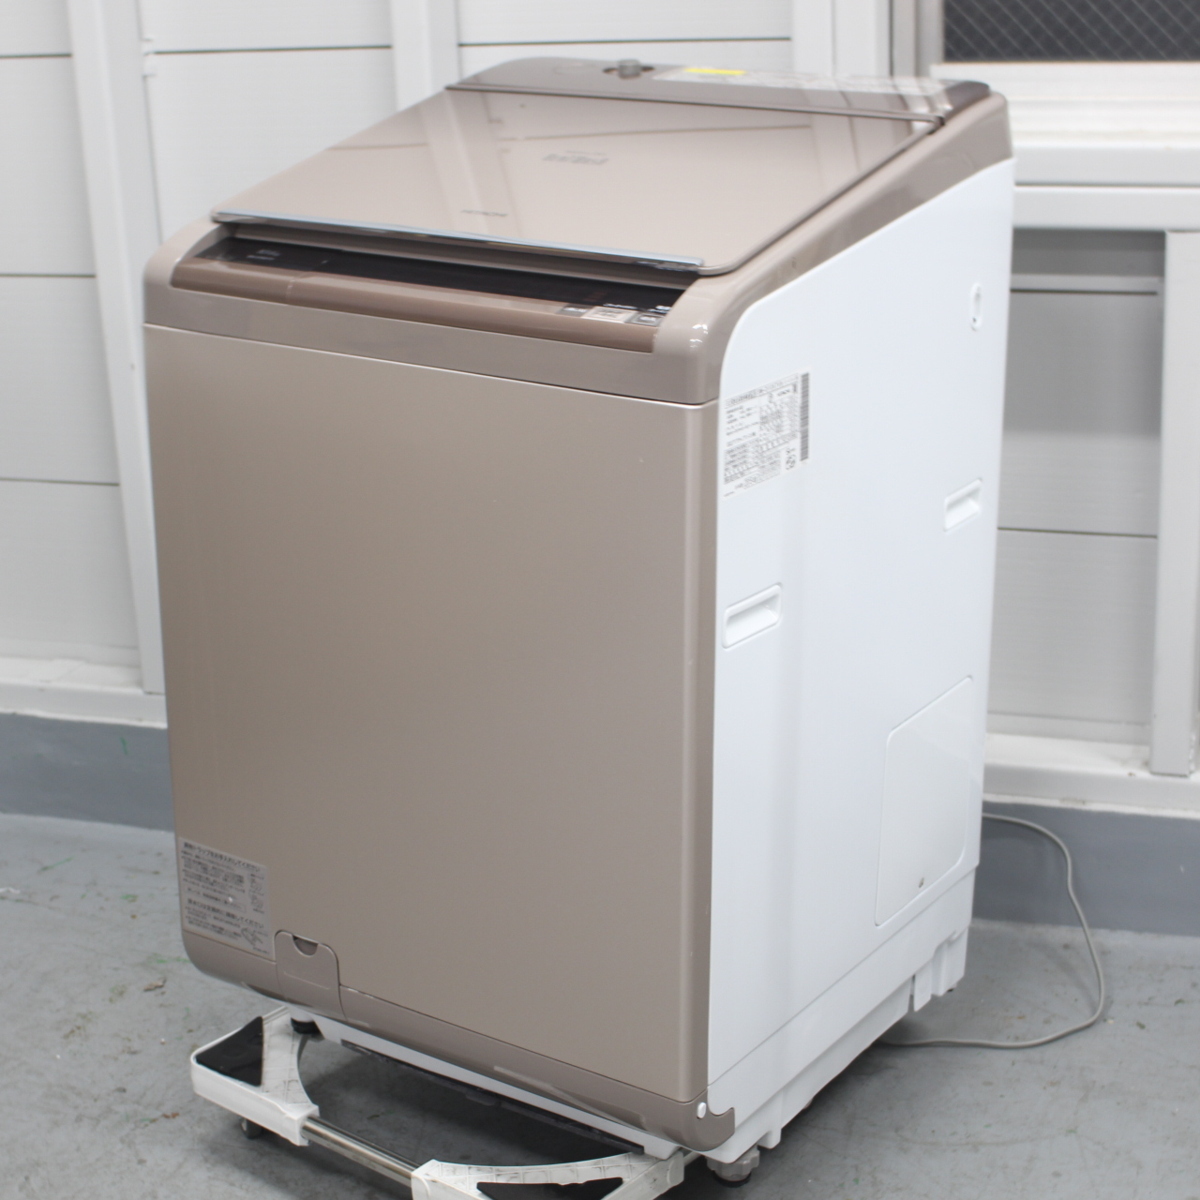 日立 洗濯乾燥機 洗濯10kg 乾燥6kg BW-D10XTV 速乾ビート乾燥 2015年製